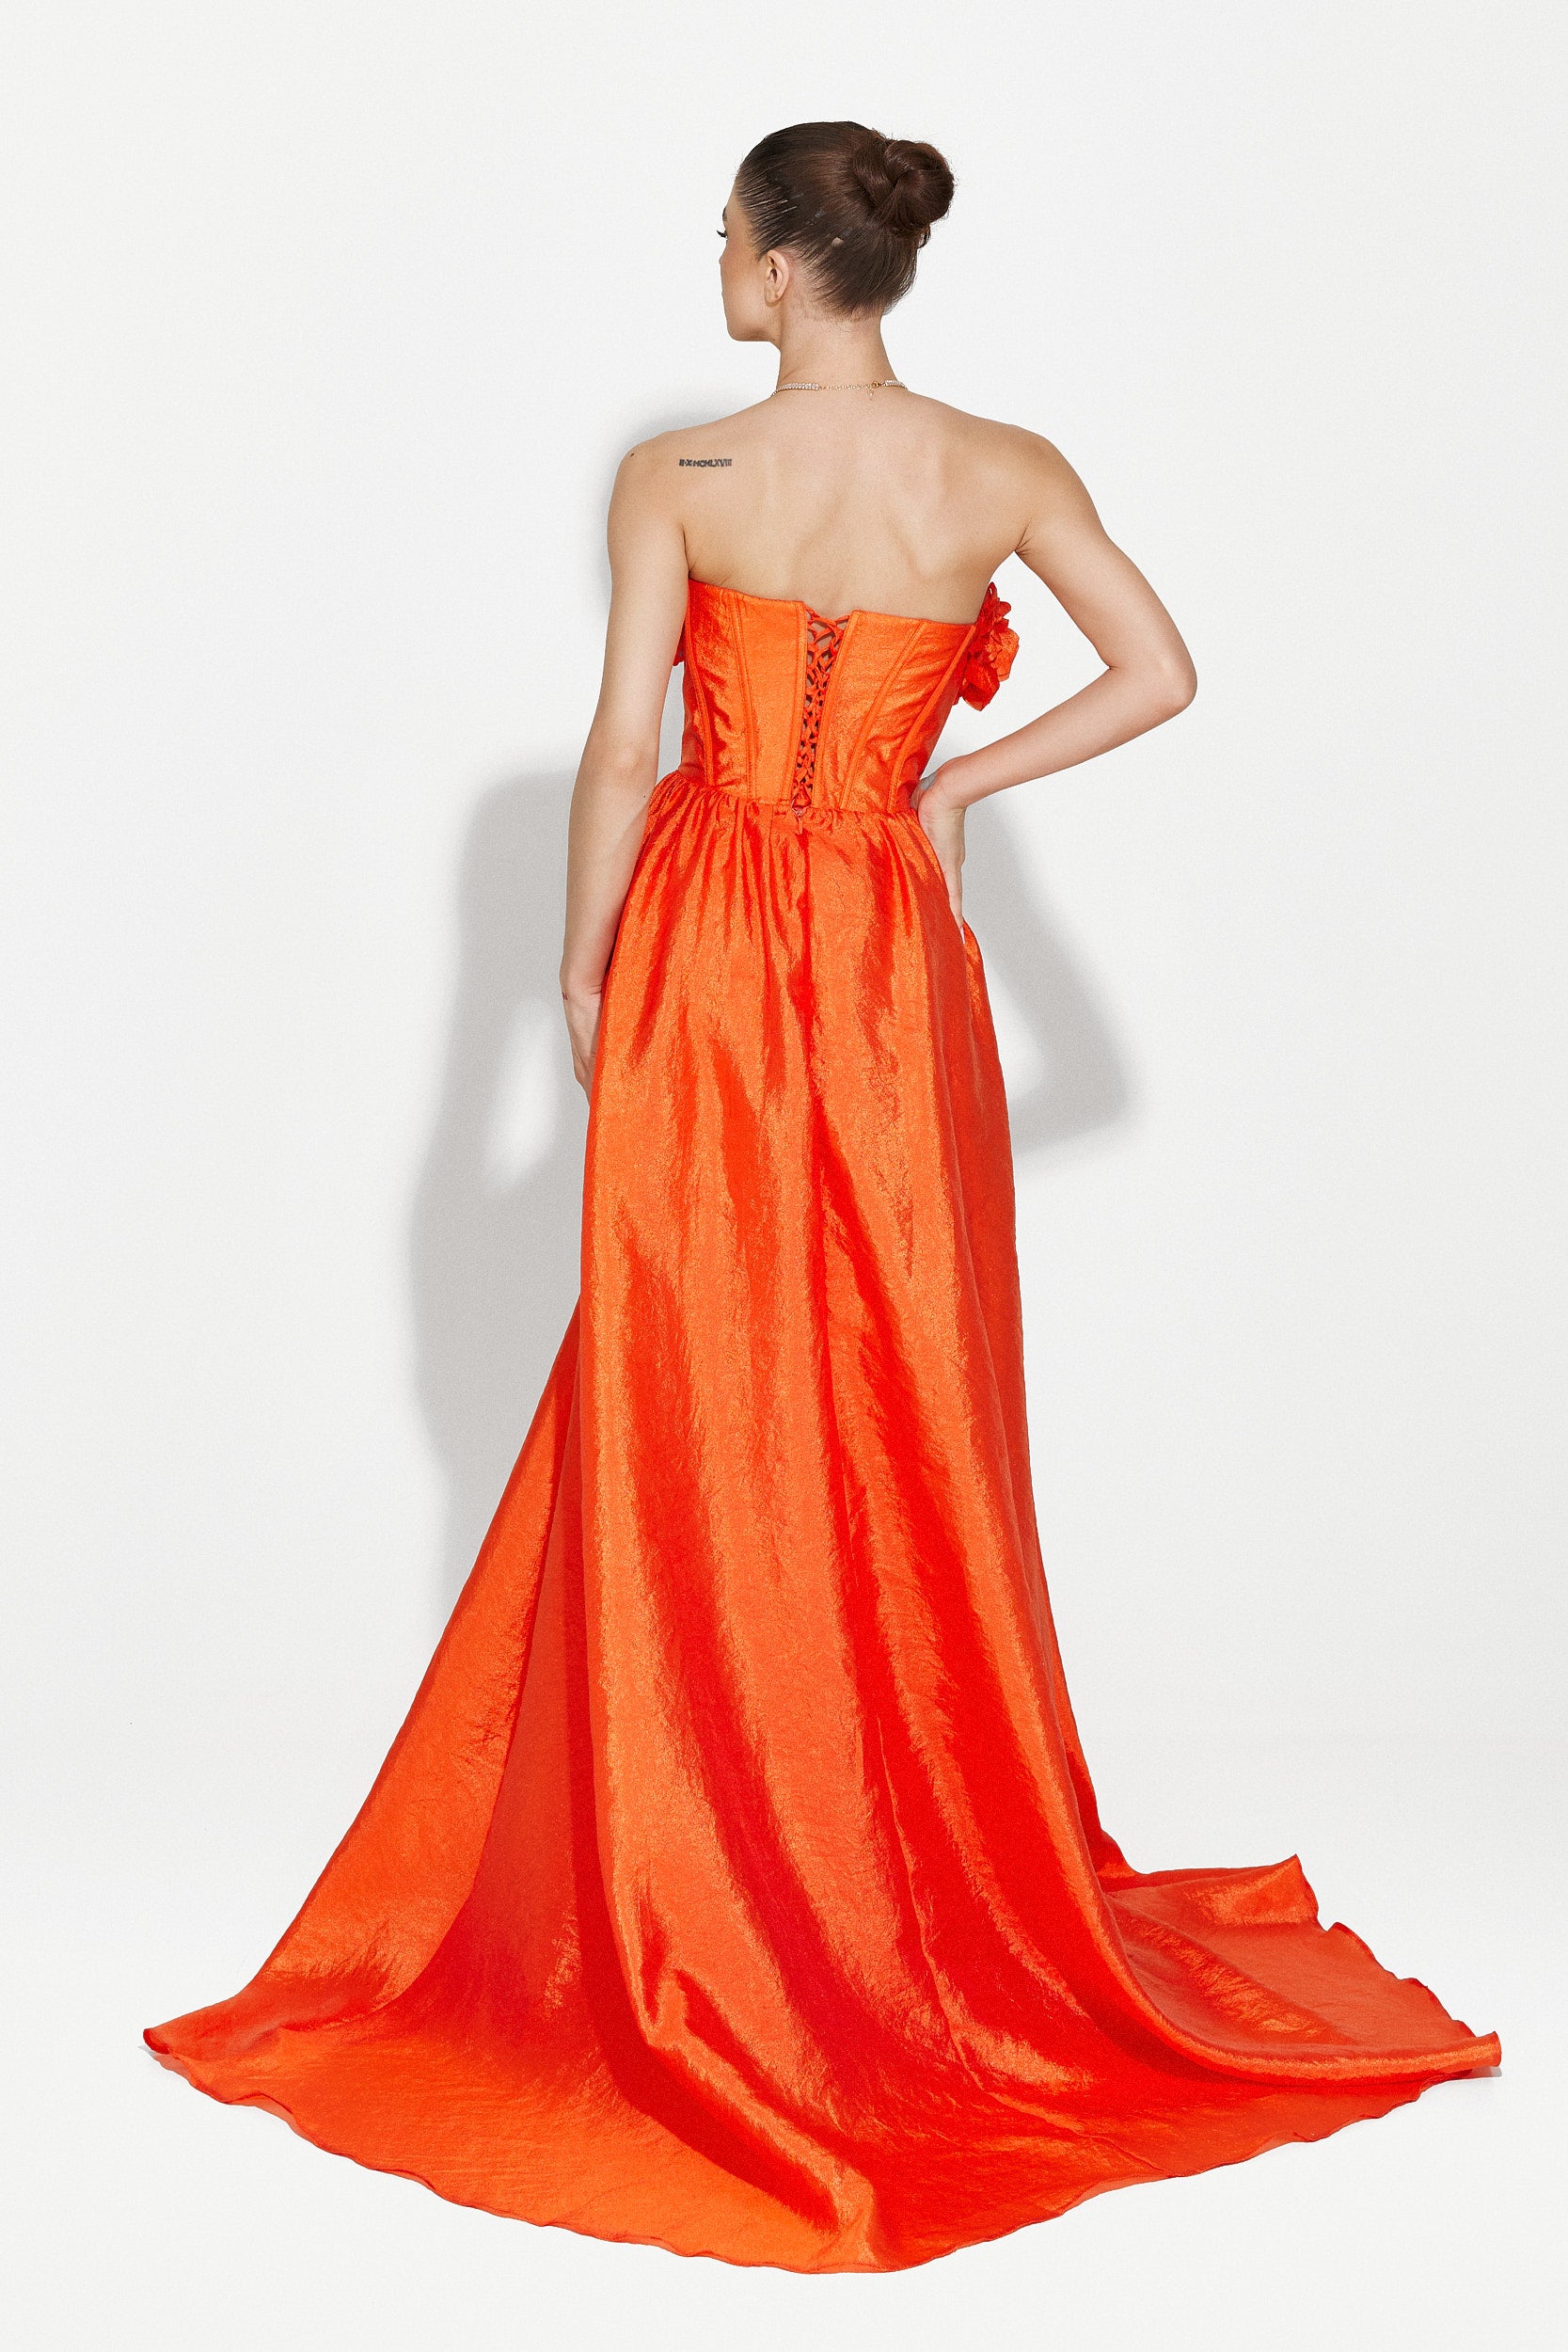 Ayana Bogas hosszú narancssárga női ruha